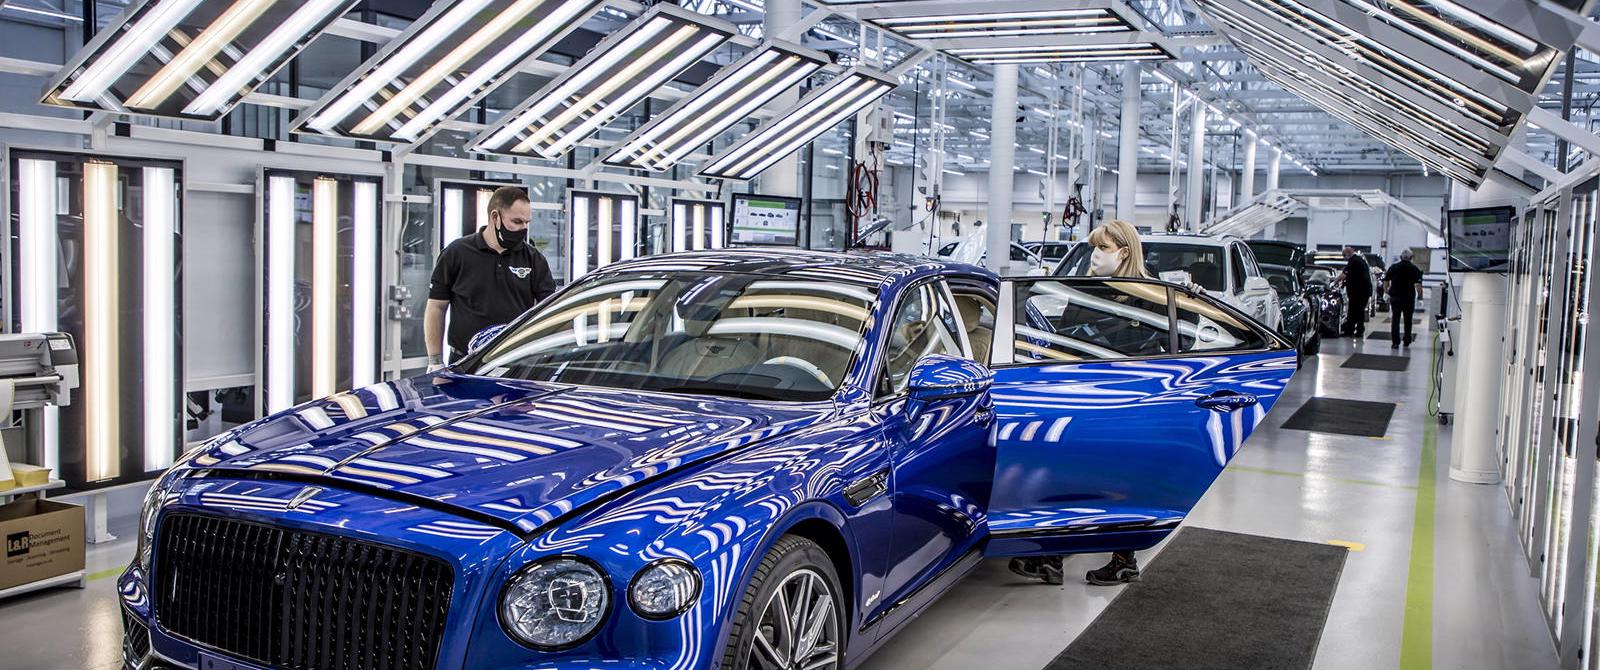 Nghịch lý của Bentley: Bán xe ít, bất ổn kinh tế toàn cầu nhưng vẫn lãi lớn